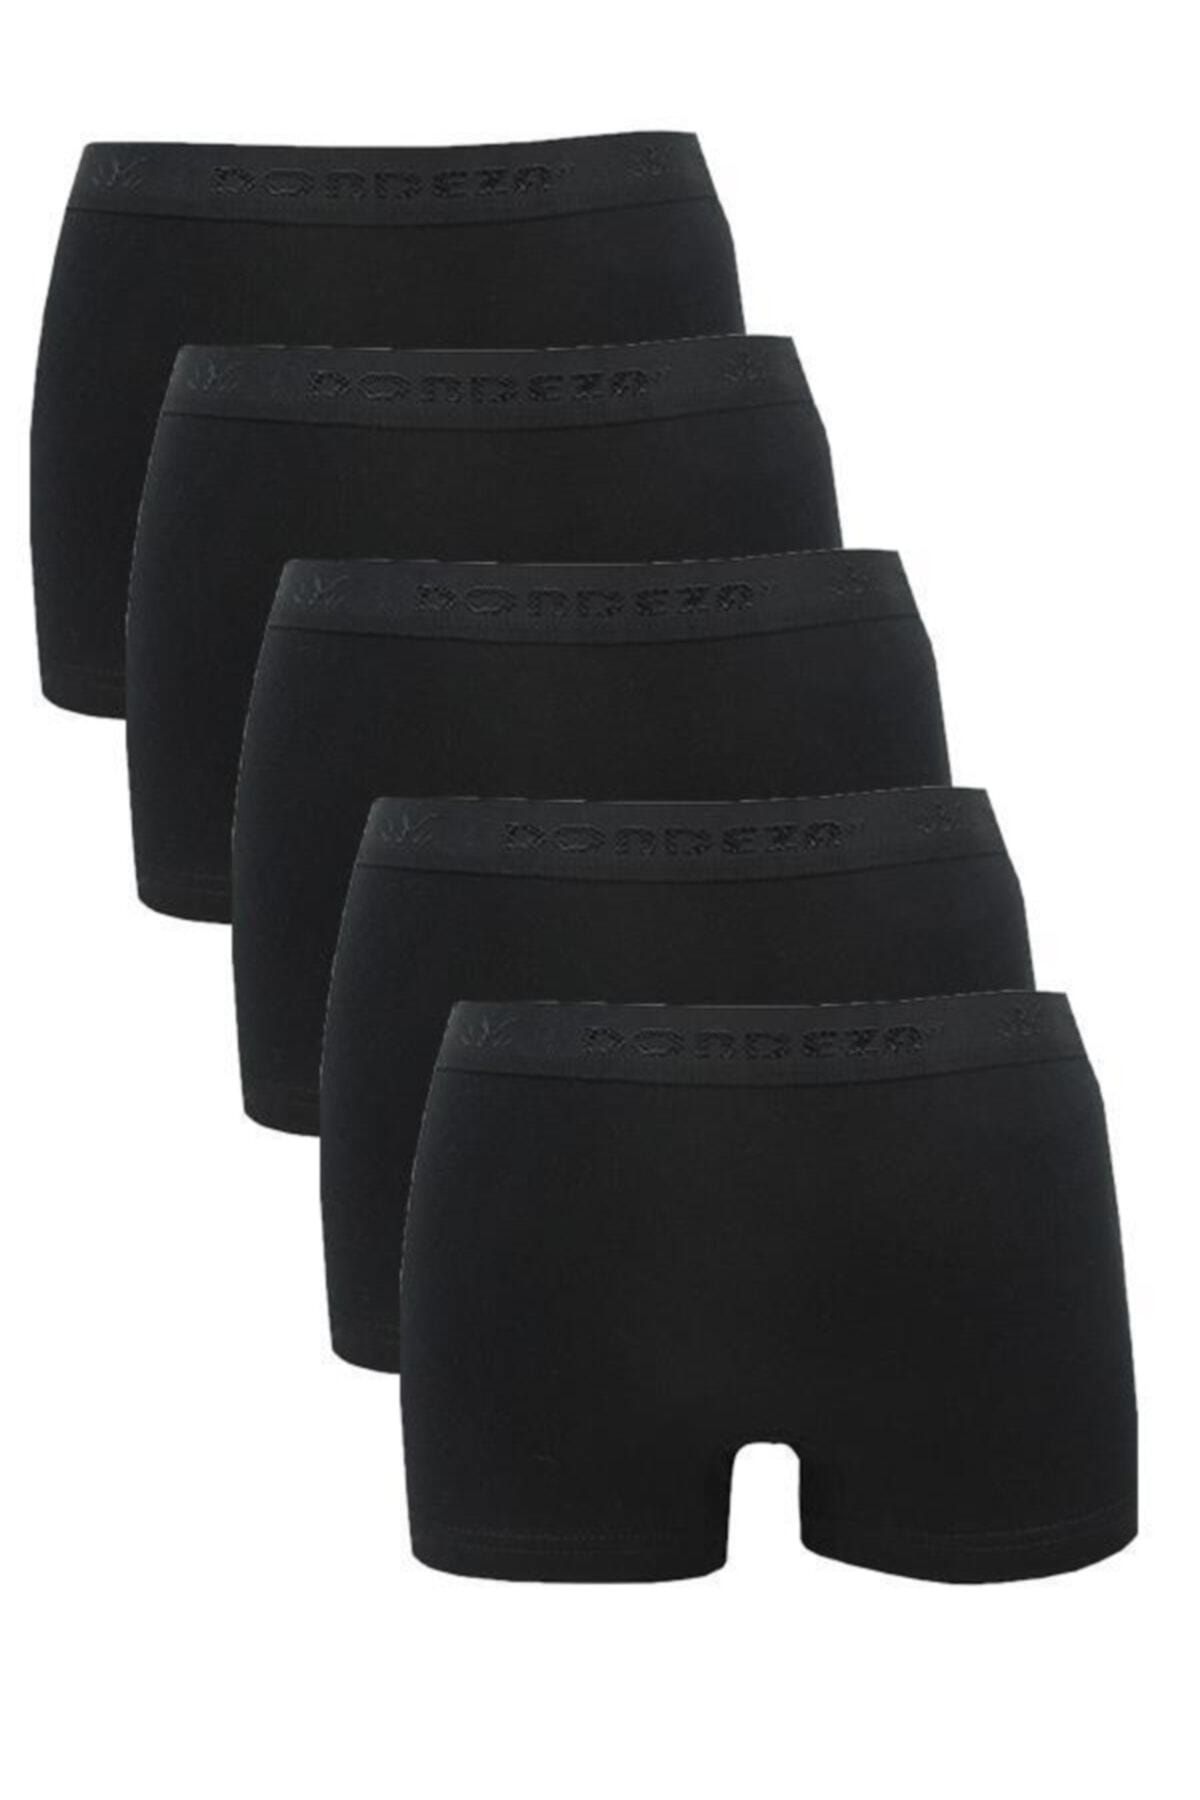 Dondeza 5 Pieces Black Color Women's Boxer Shorts Size 5005 Xl